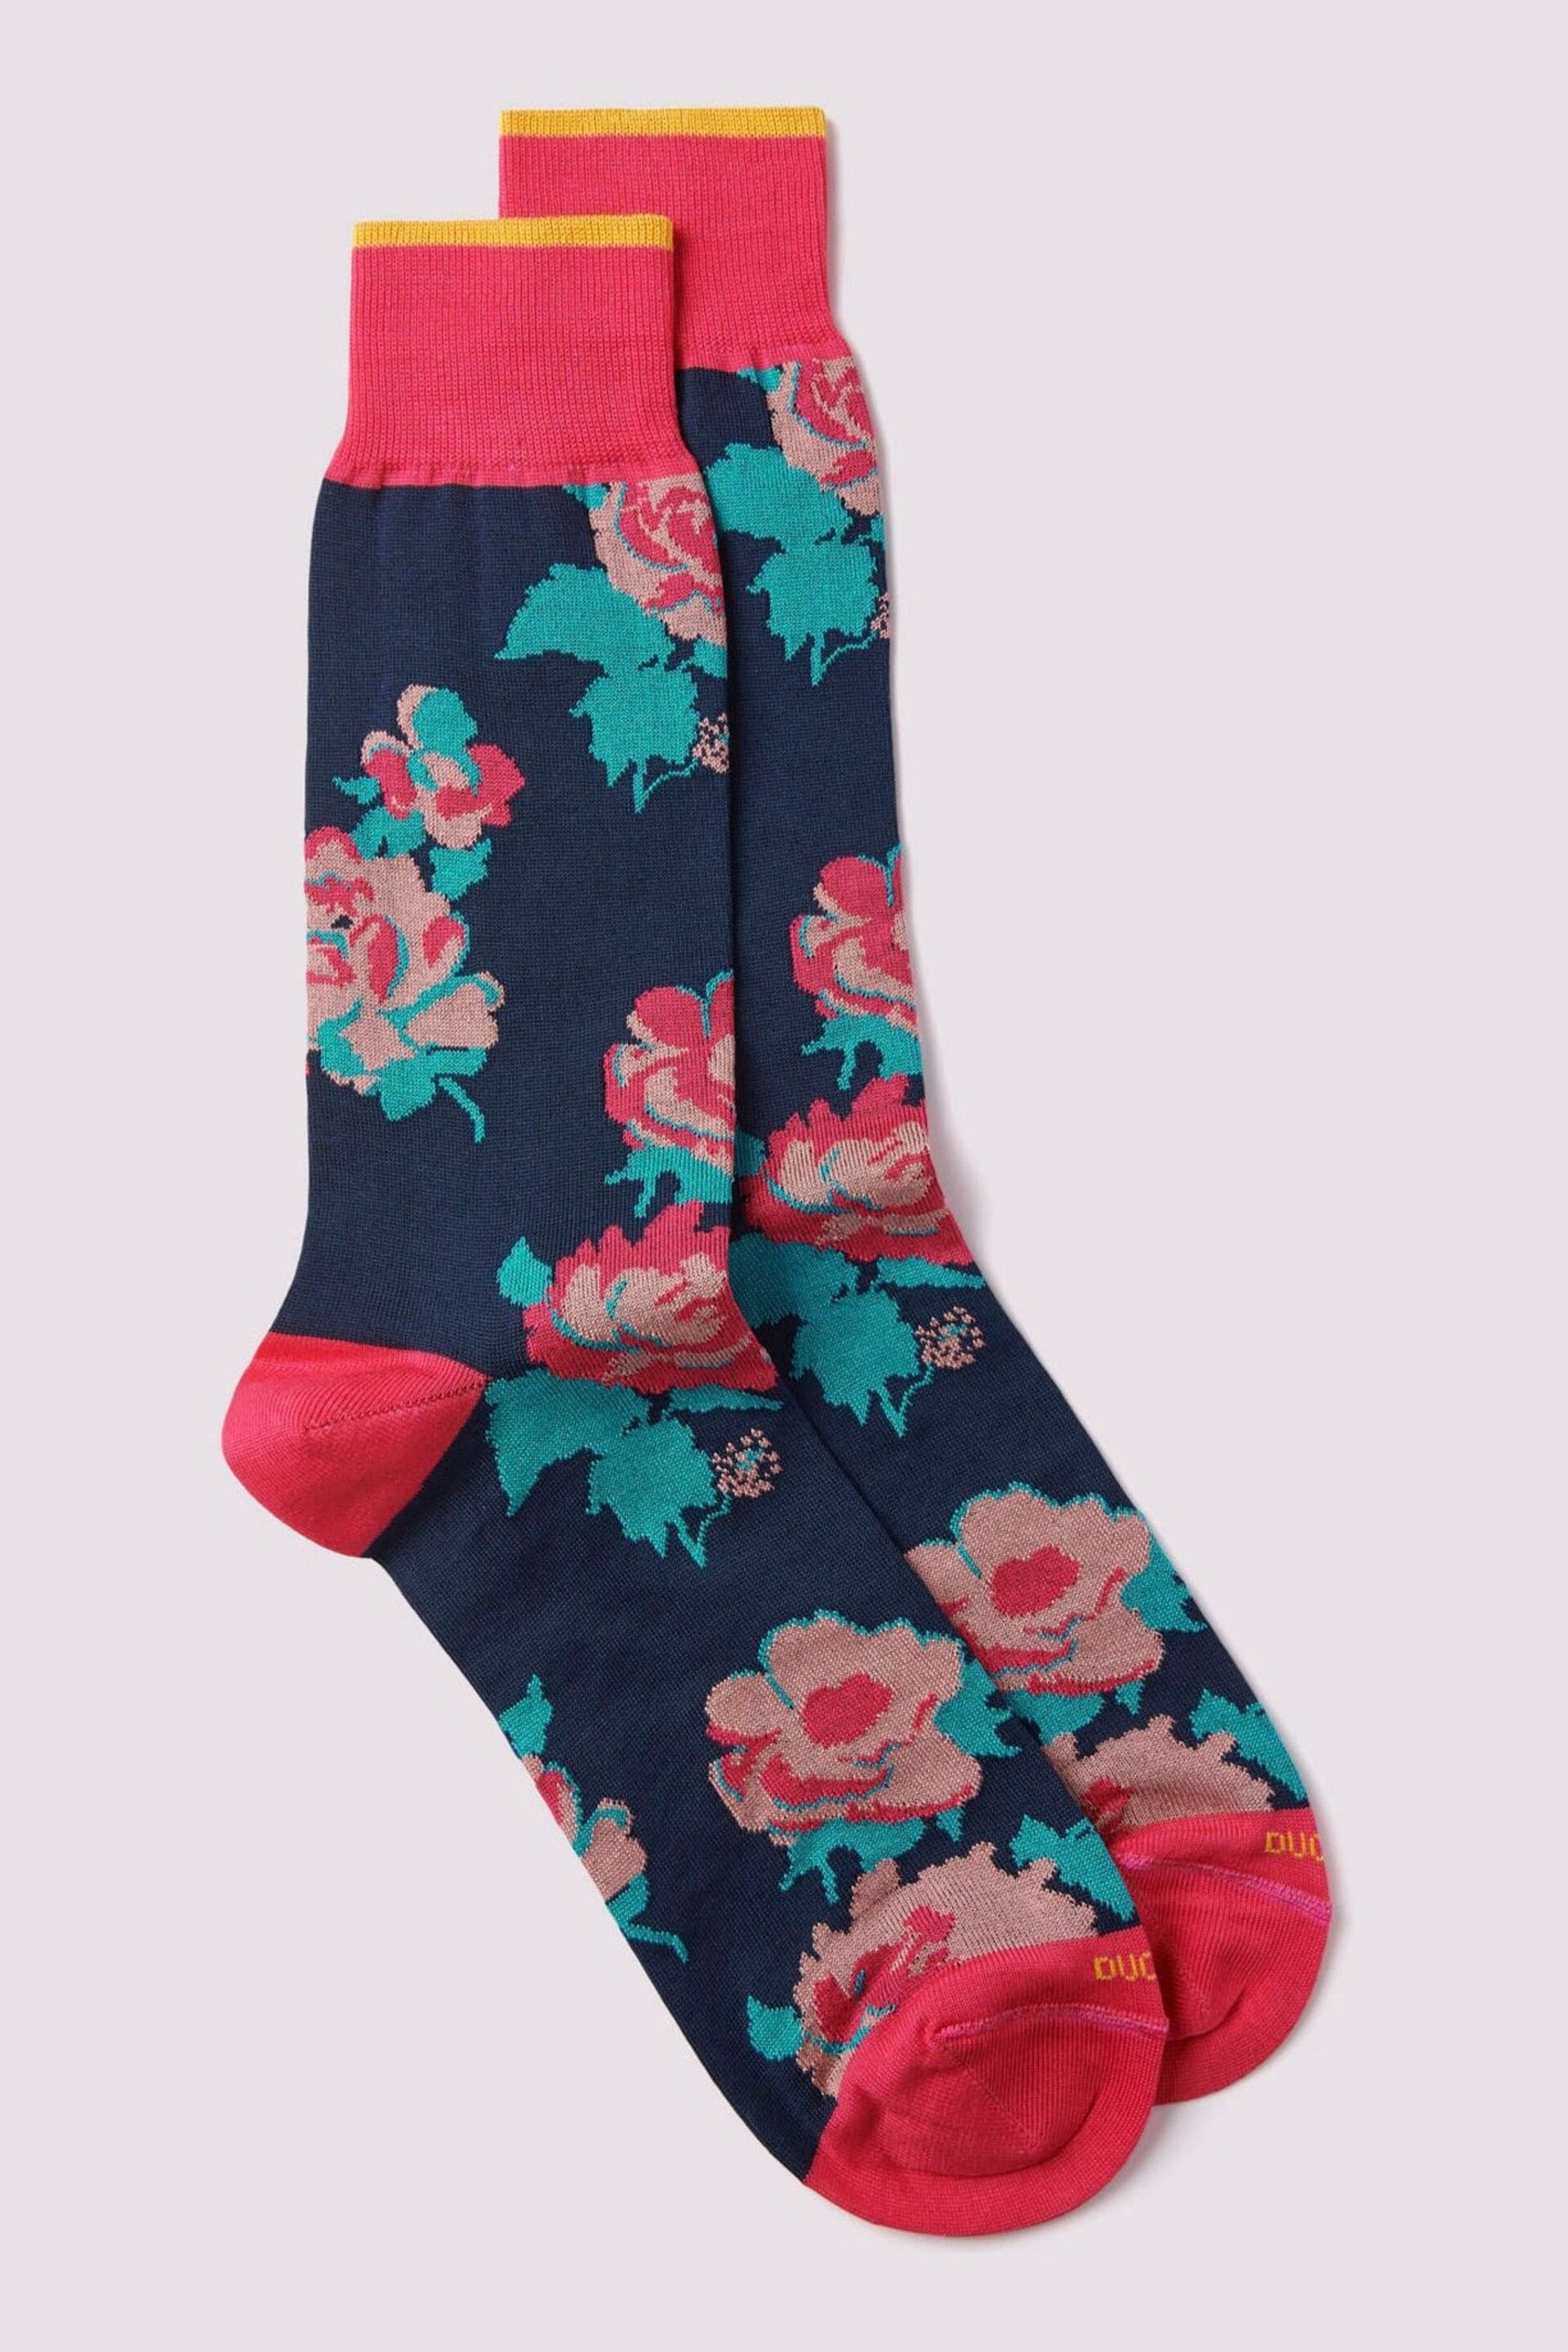 Duchamp Pink Floral Impression Socks - Image 2 of 3